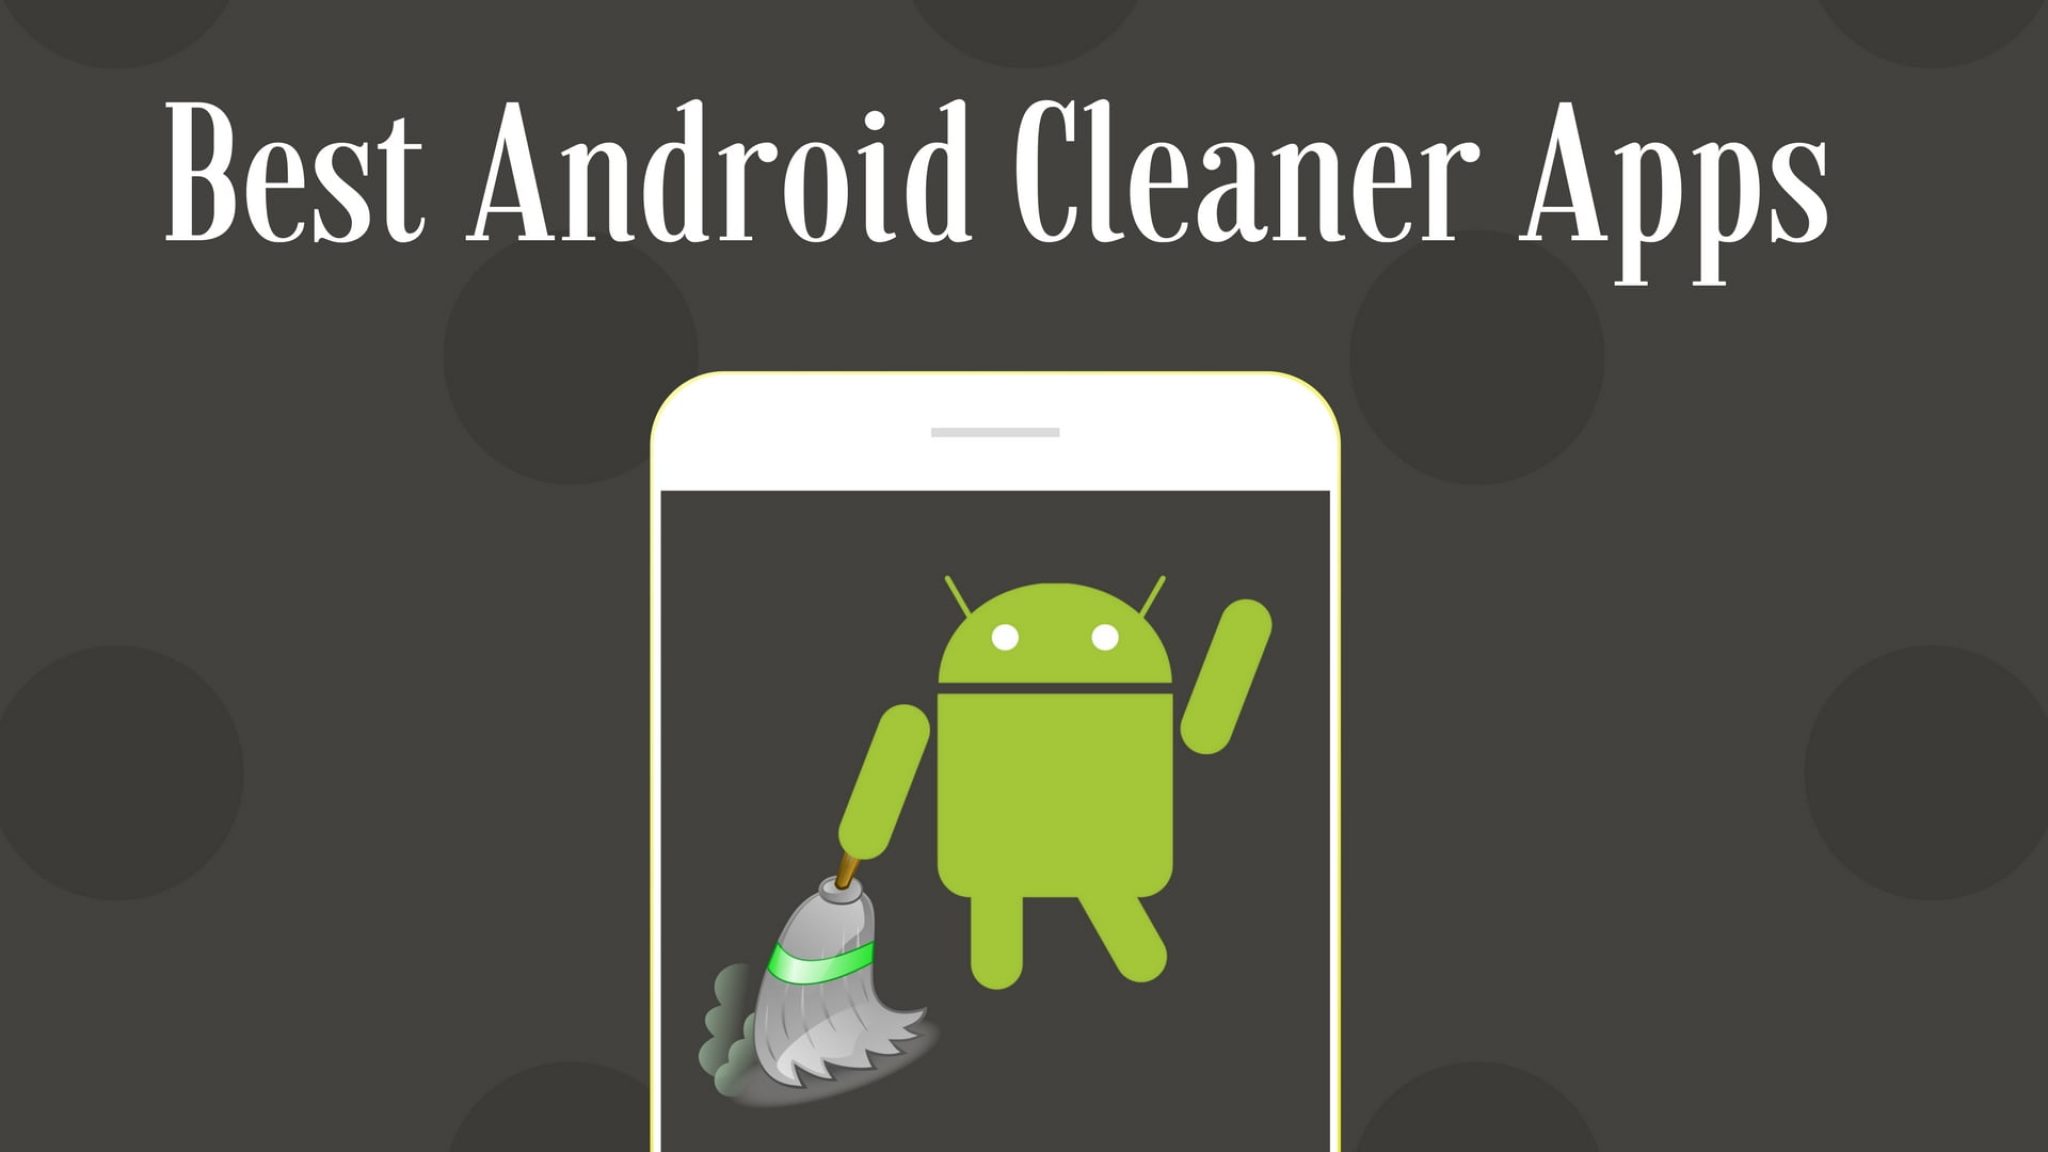 Android Cleaner. Cleaning app Android. Андроид чистый Android. Клинер апп. Очищение андроид